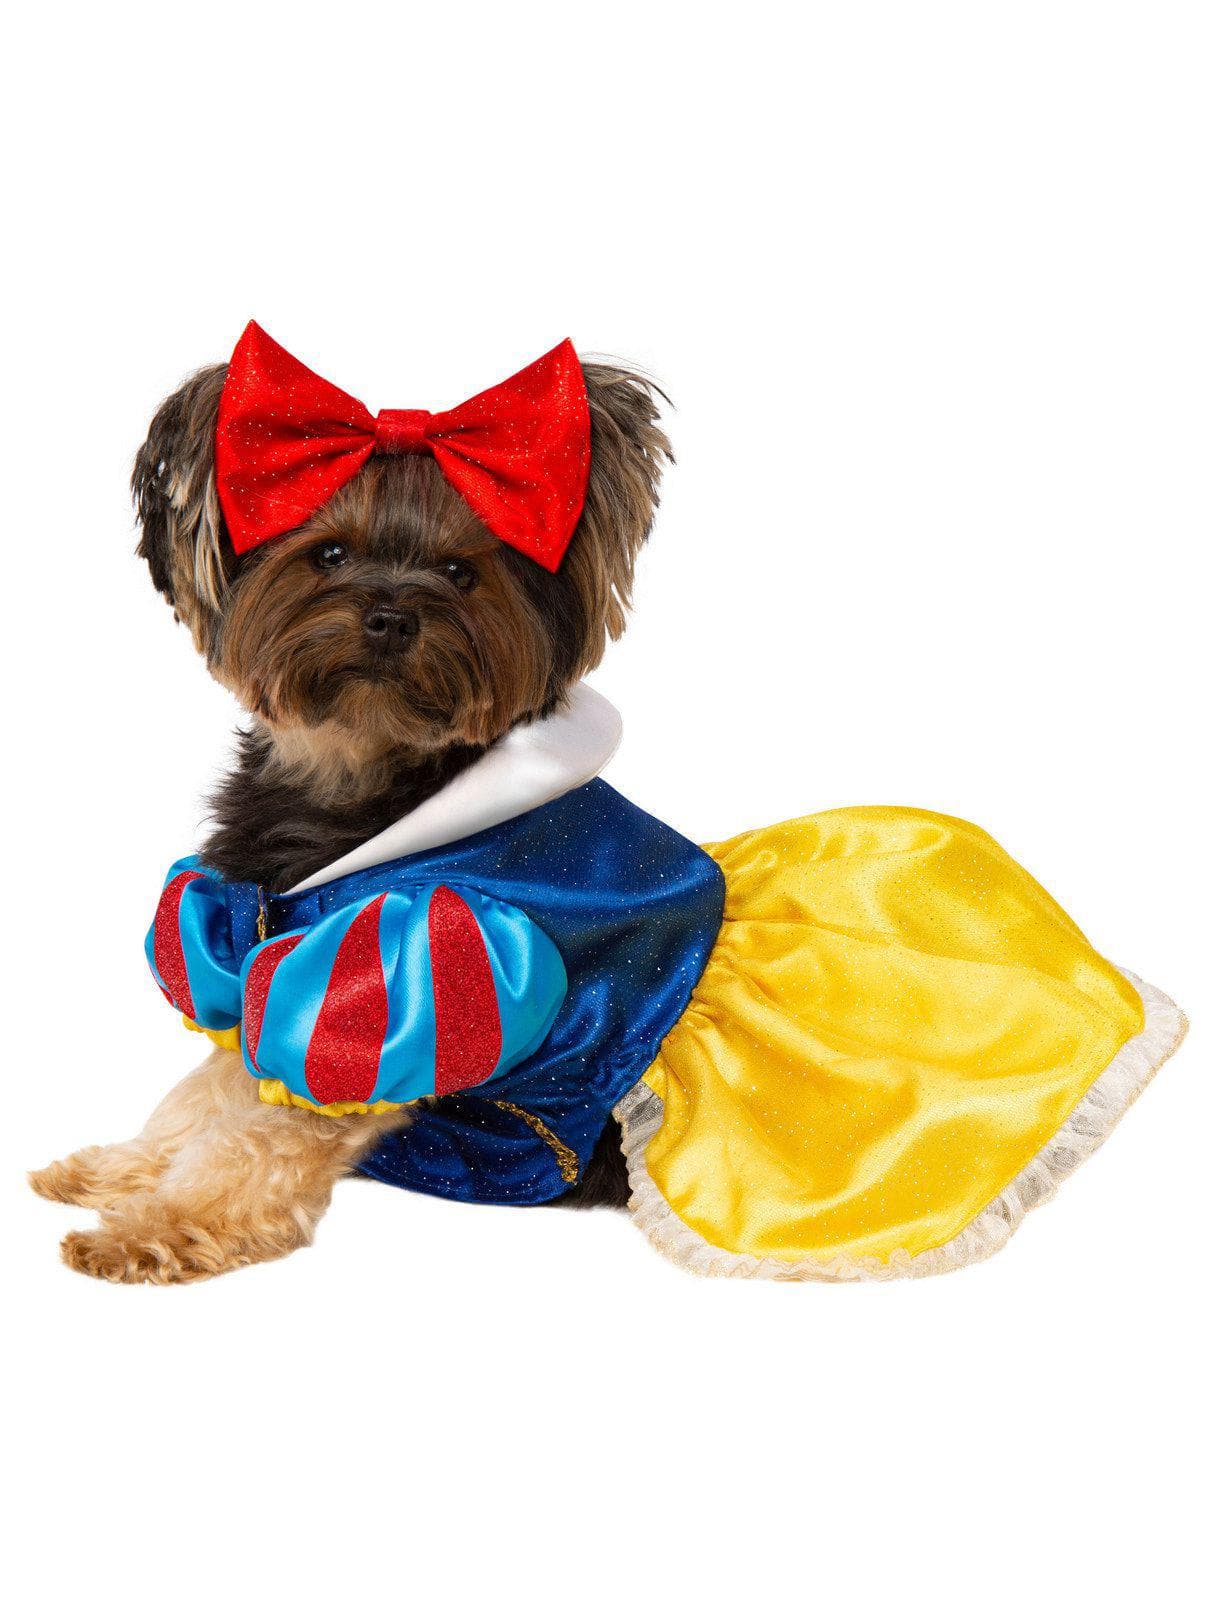 Snow White Pet Costume - costumes.com